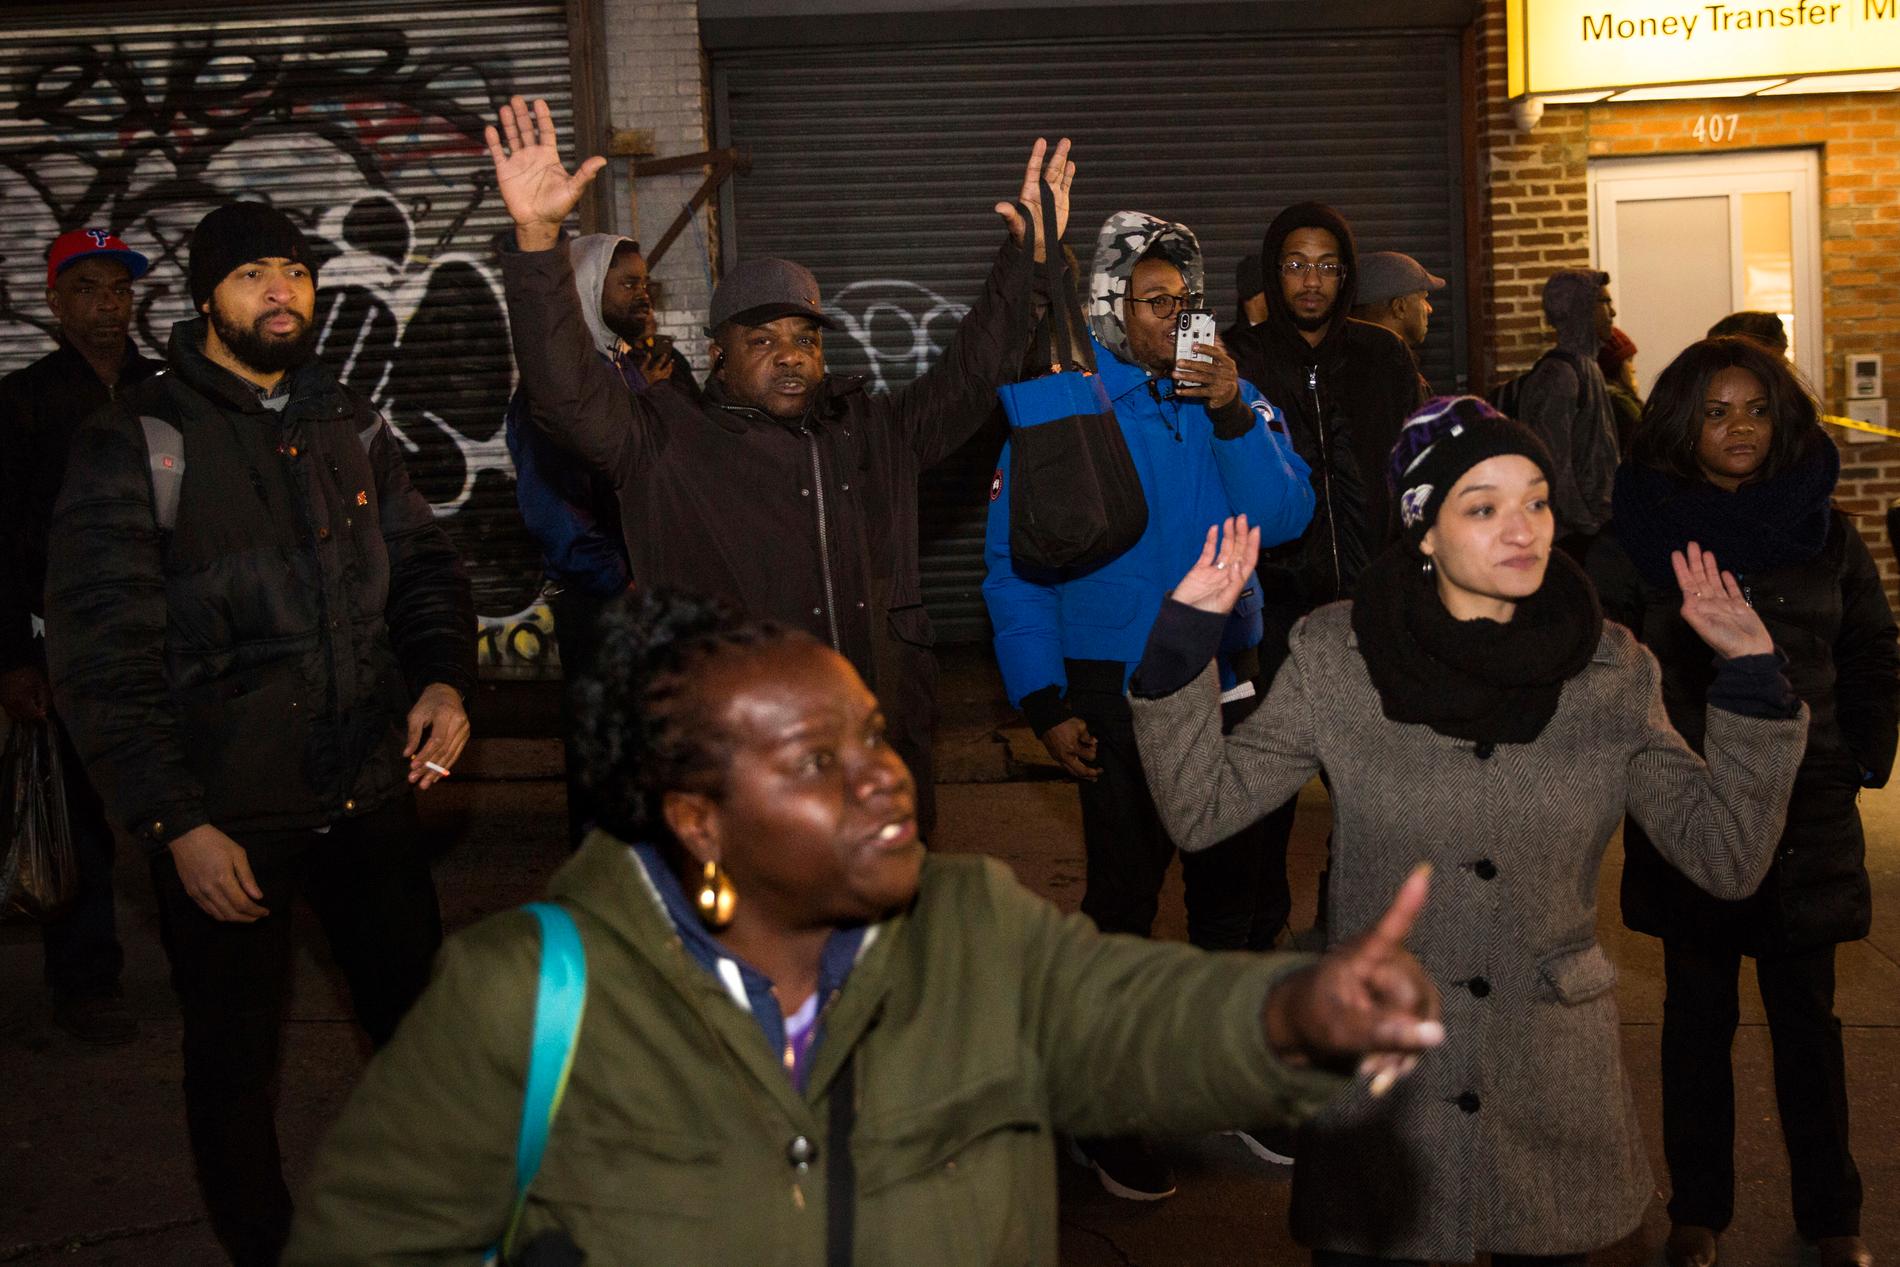 Boende i Brooklyn protesterar efter att polis skjutit ihjäl en obeväpnad svart man i området.